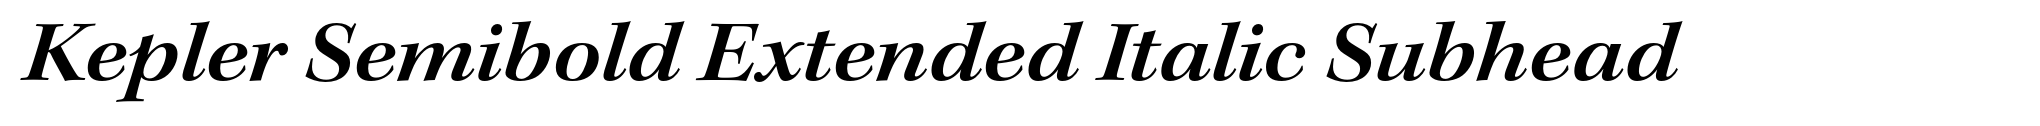 Kepler Semibold Extended Italic Subhead image